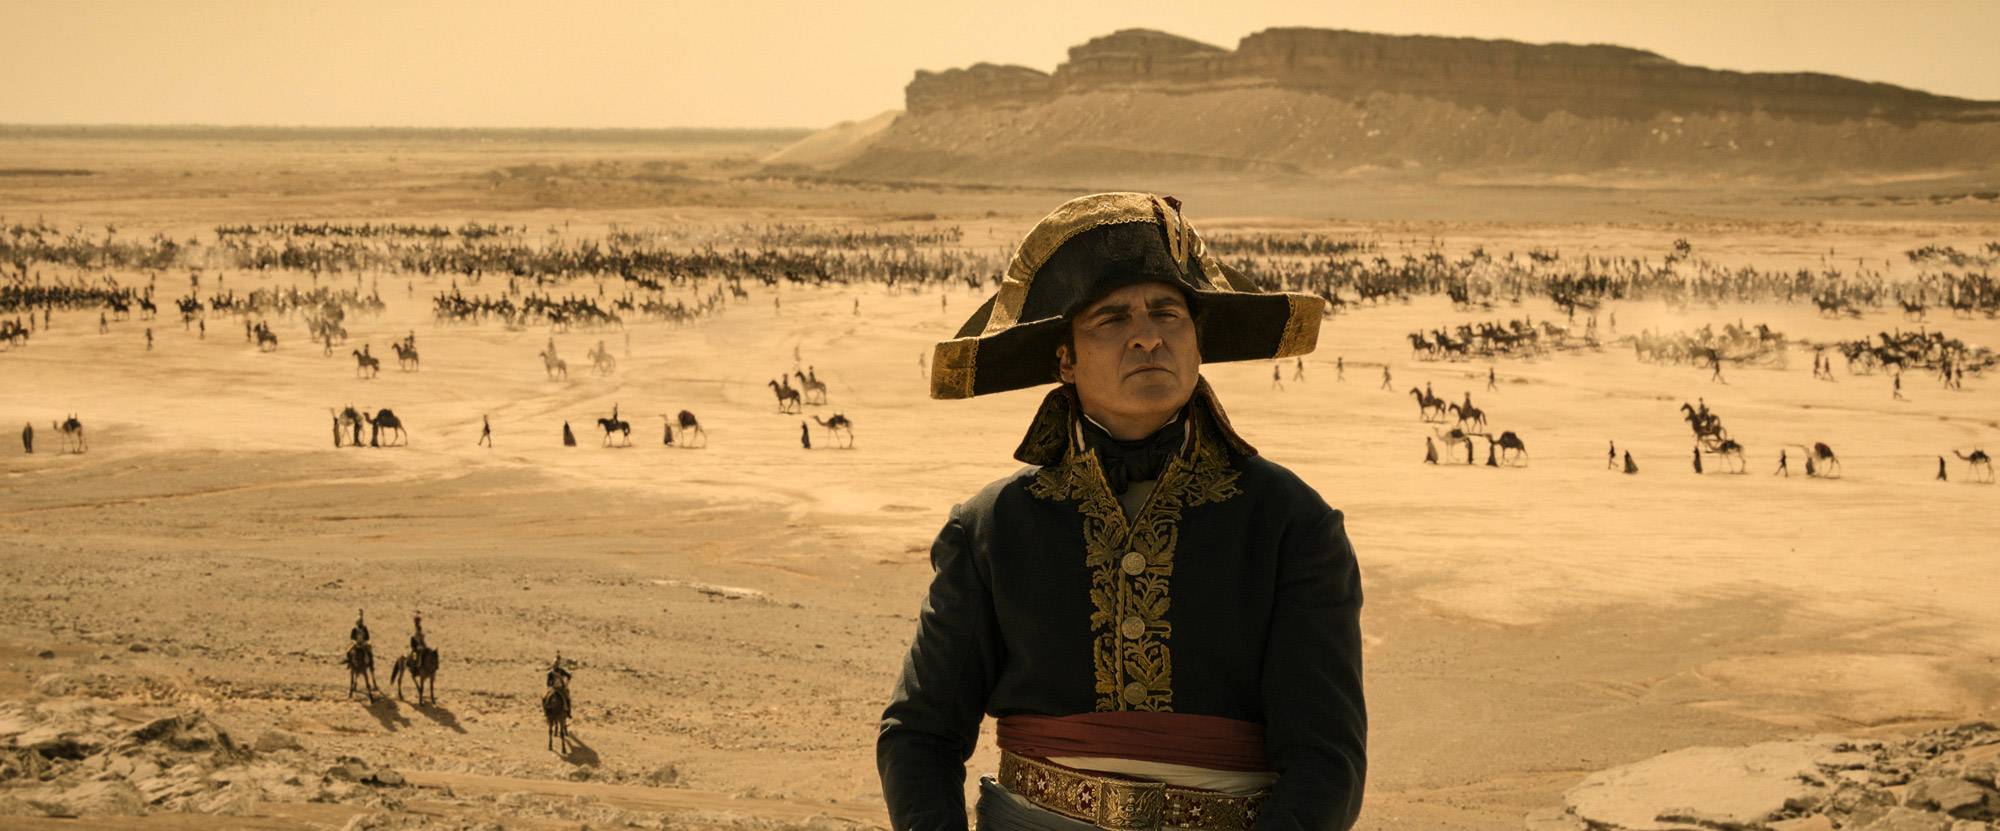 Fotos z filmu przedstawia Napoleona na tle pustyni arabskiej przez która mkną jego oddziały